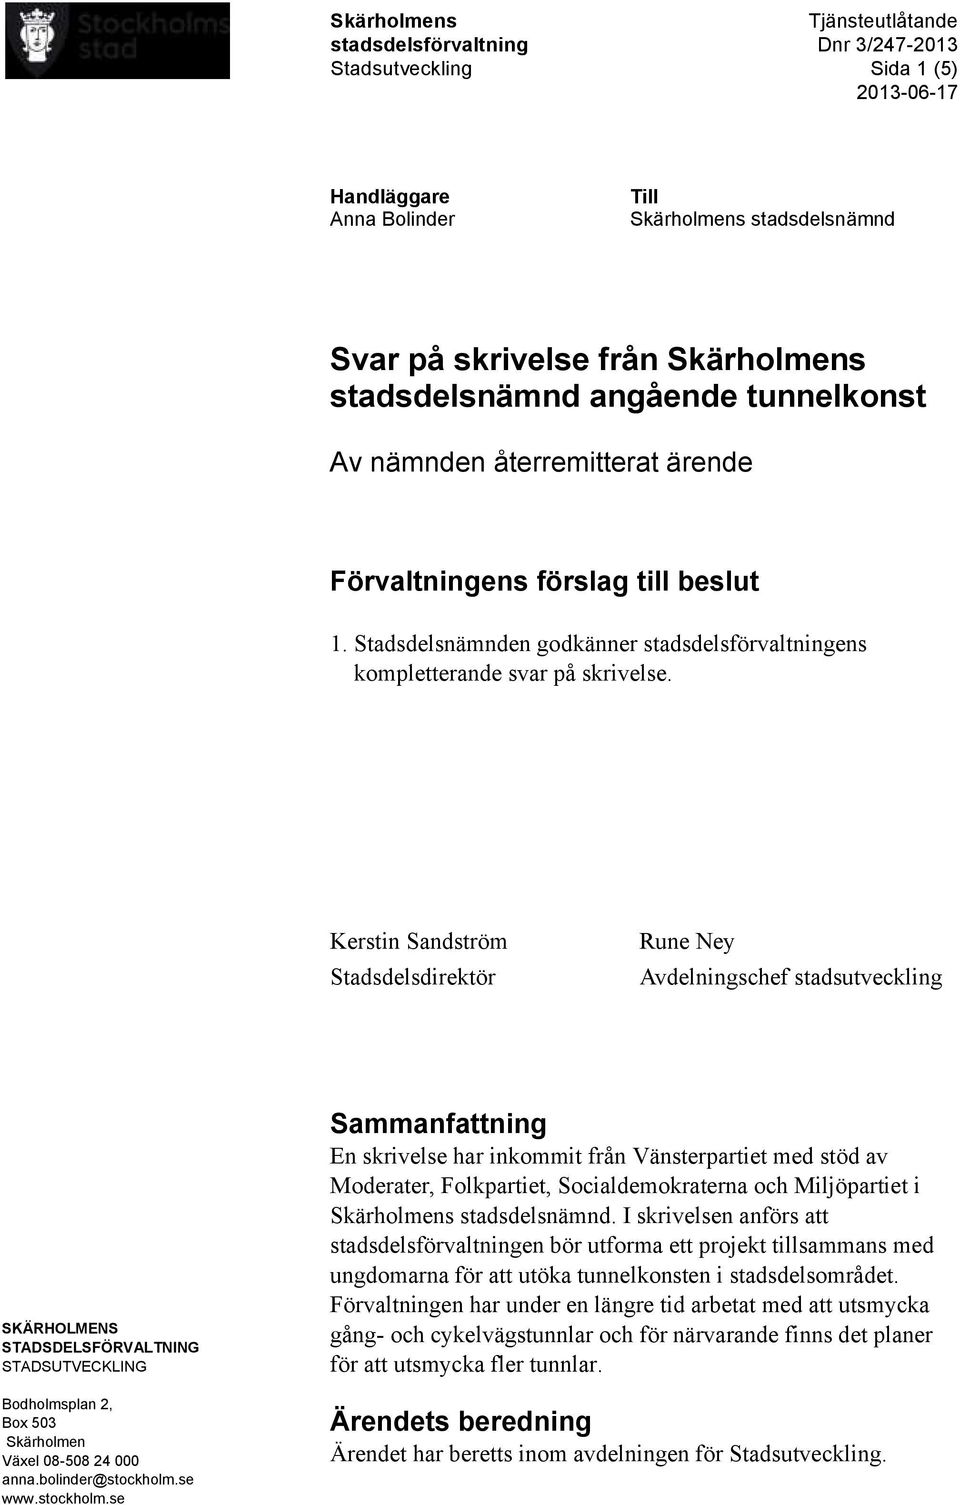 Kerstin Sandström Stadsdelsdirektör Rune Ney Avdelningschef stadsutveckling SKÄRHOLMENS STADSDELSFÖRVALTNING STADSUTVECKLING Bodholmsplan 2, Box 503 Skärholmen Växel 08-508 24 000 anna.